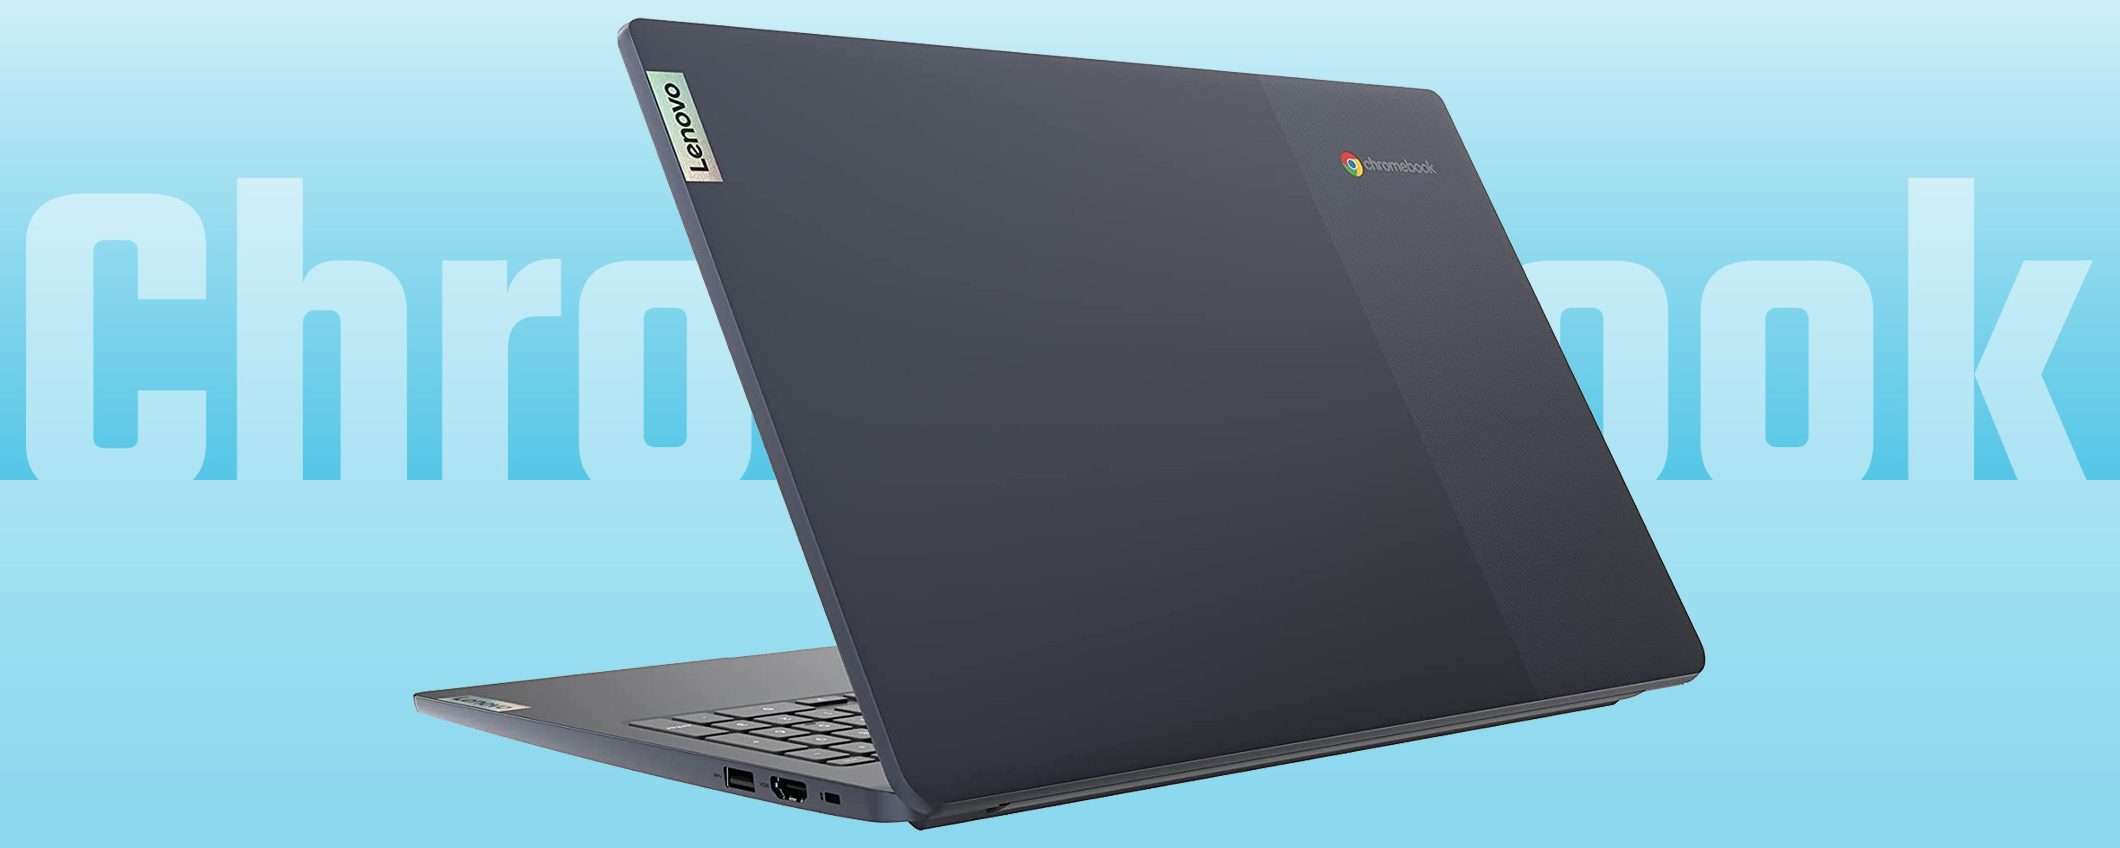 Prime Day: giù il prezzo di questo Chromebook Lenovo